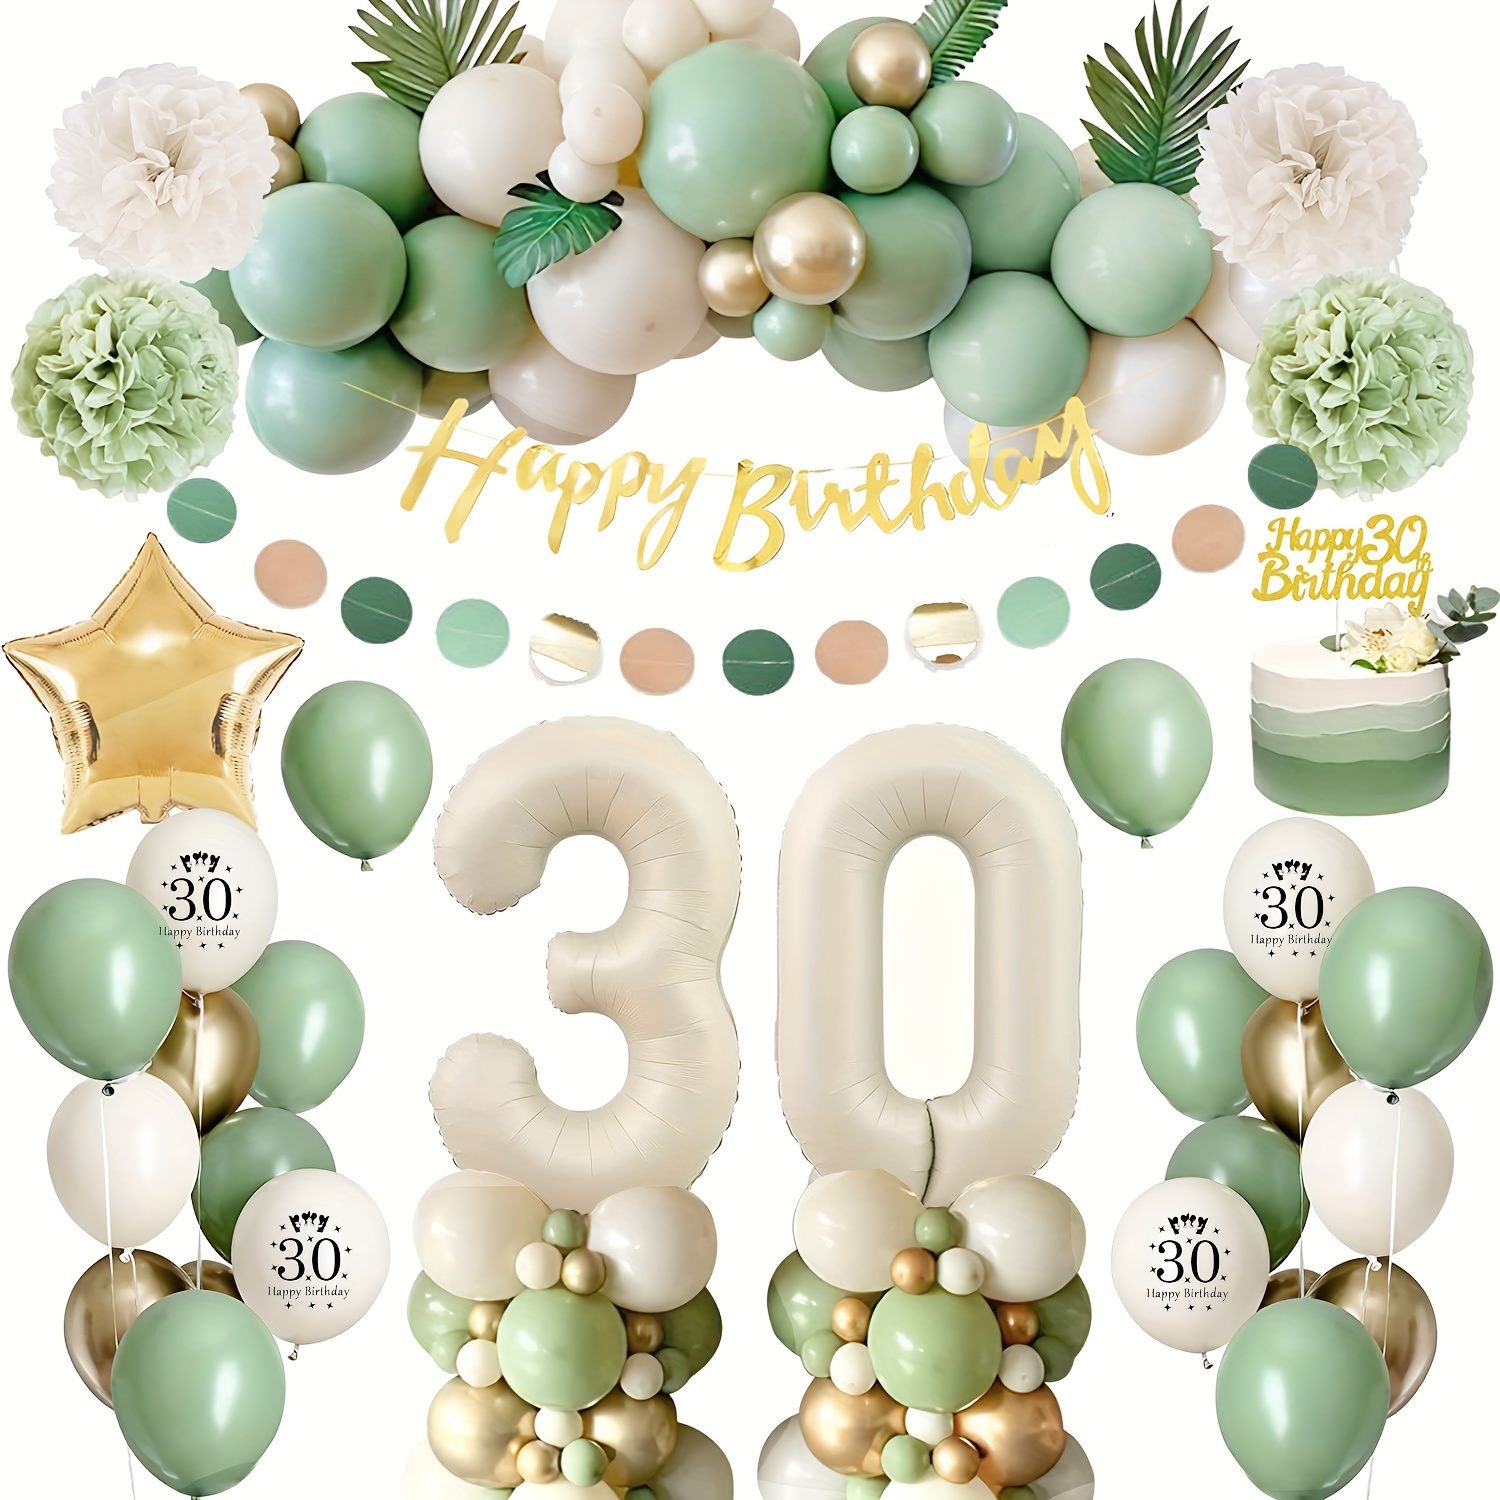 Decoraciones de cumpleaños número 30 para hombres, kit de globos azules de  feliz cumpleaños 30 para él, suministros de fiesta con pancarta negra